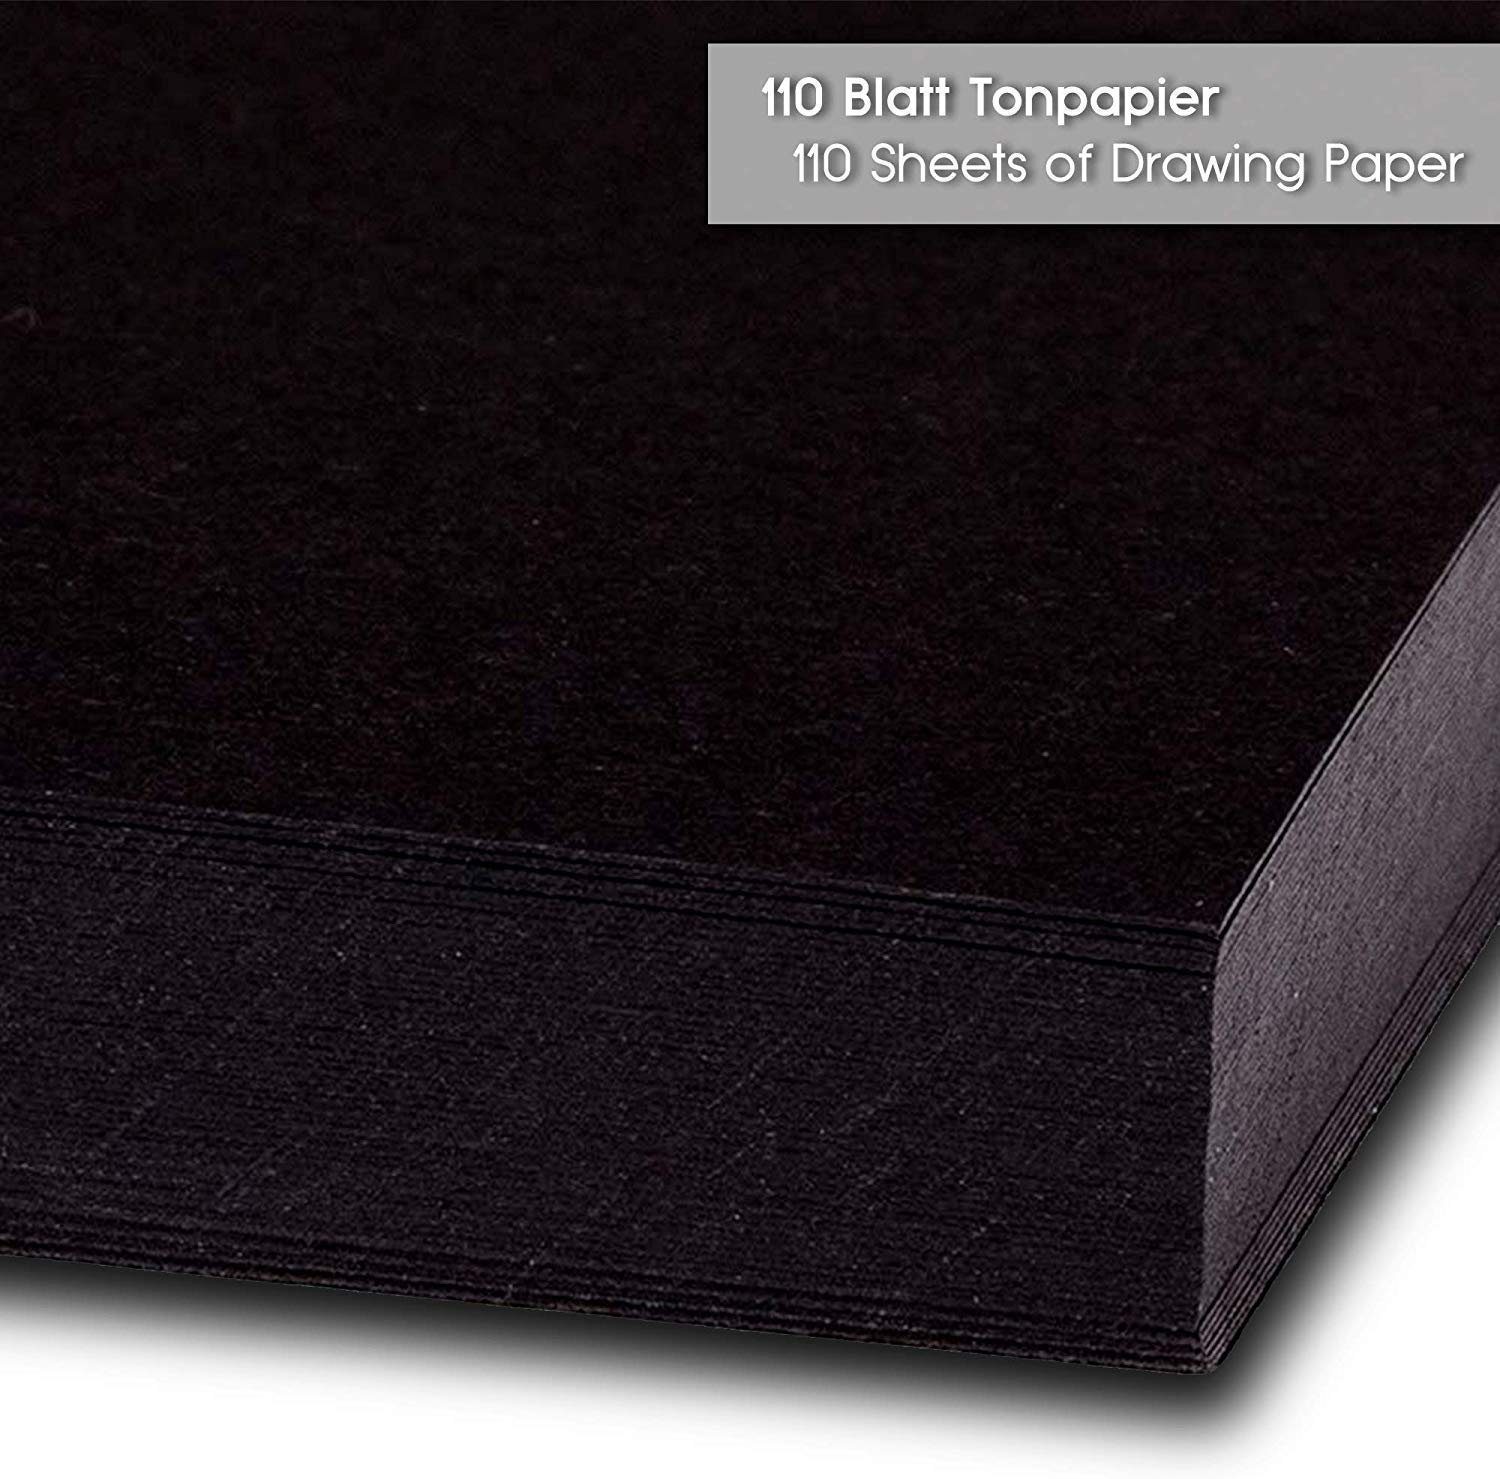 130g/m² 110 Schwarz Tritart Aquarellpapier A4 - 110 A4 Blatt, Blatt Tonpapier Schwarzes - 130g/m² Tonpapier